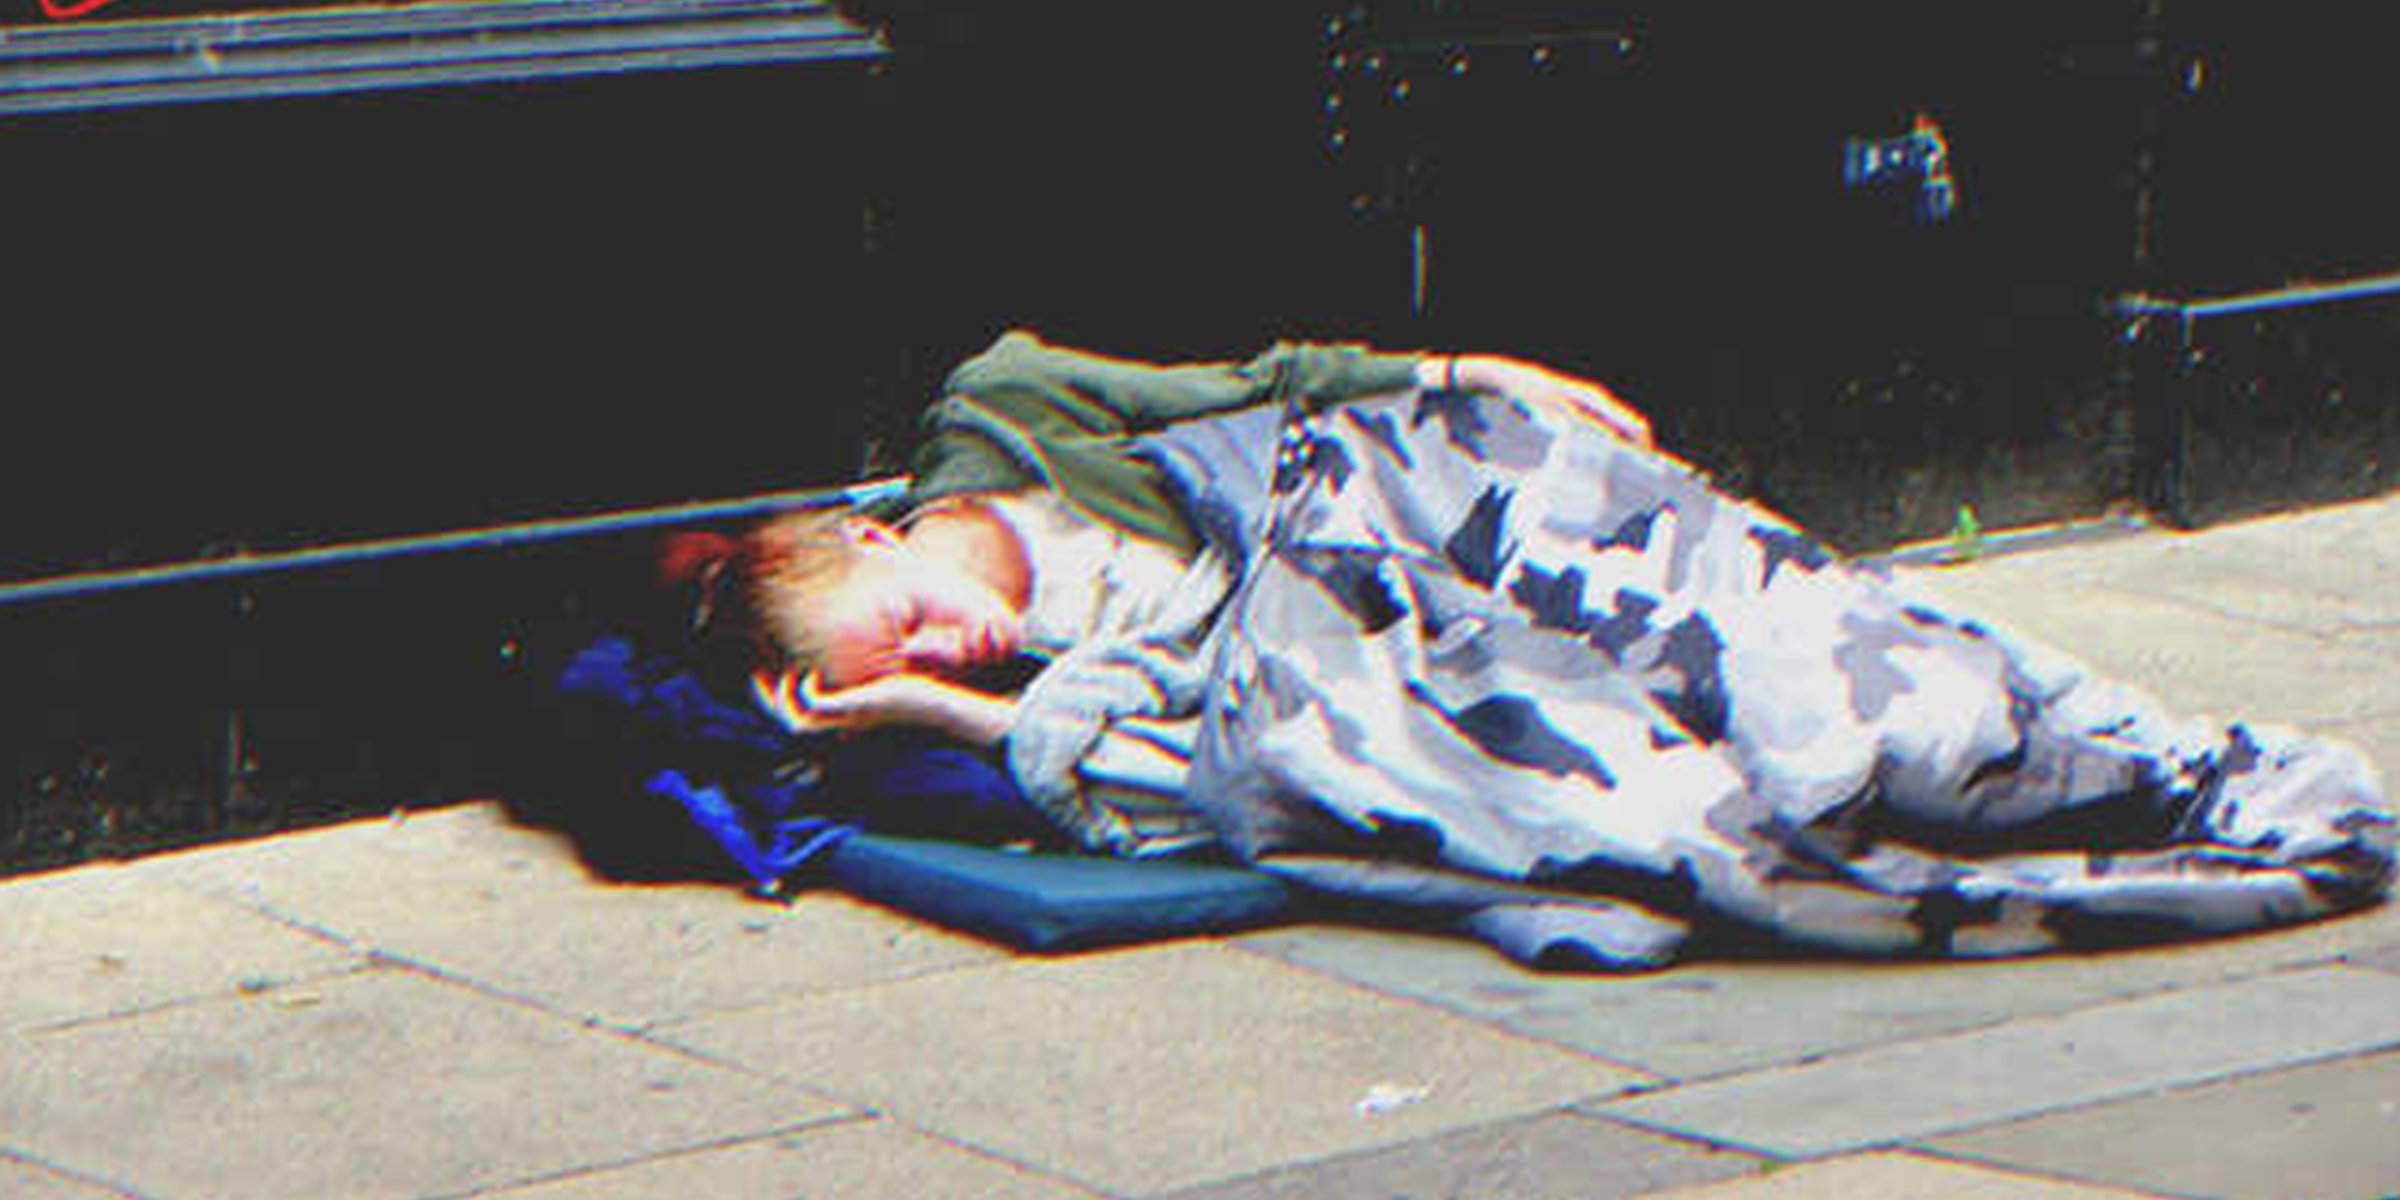 Une jeune fille dort dans la rue | Flickr / Andy Michael